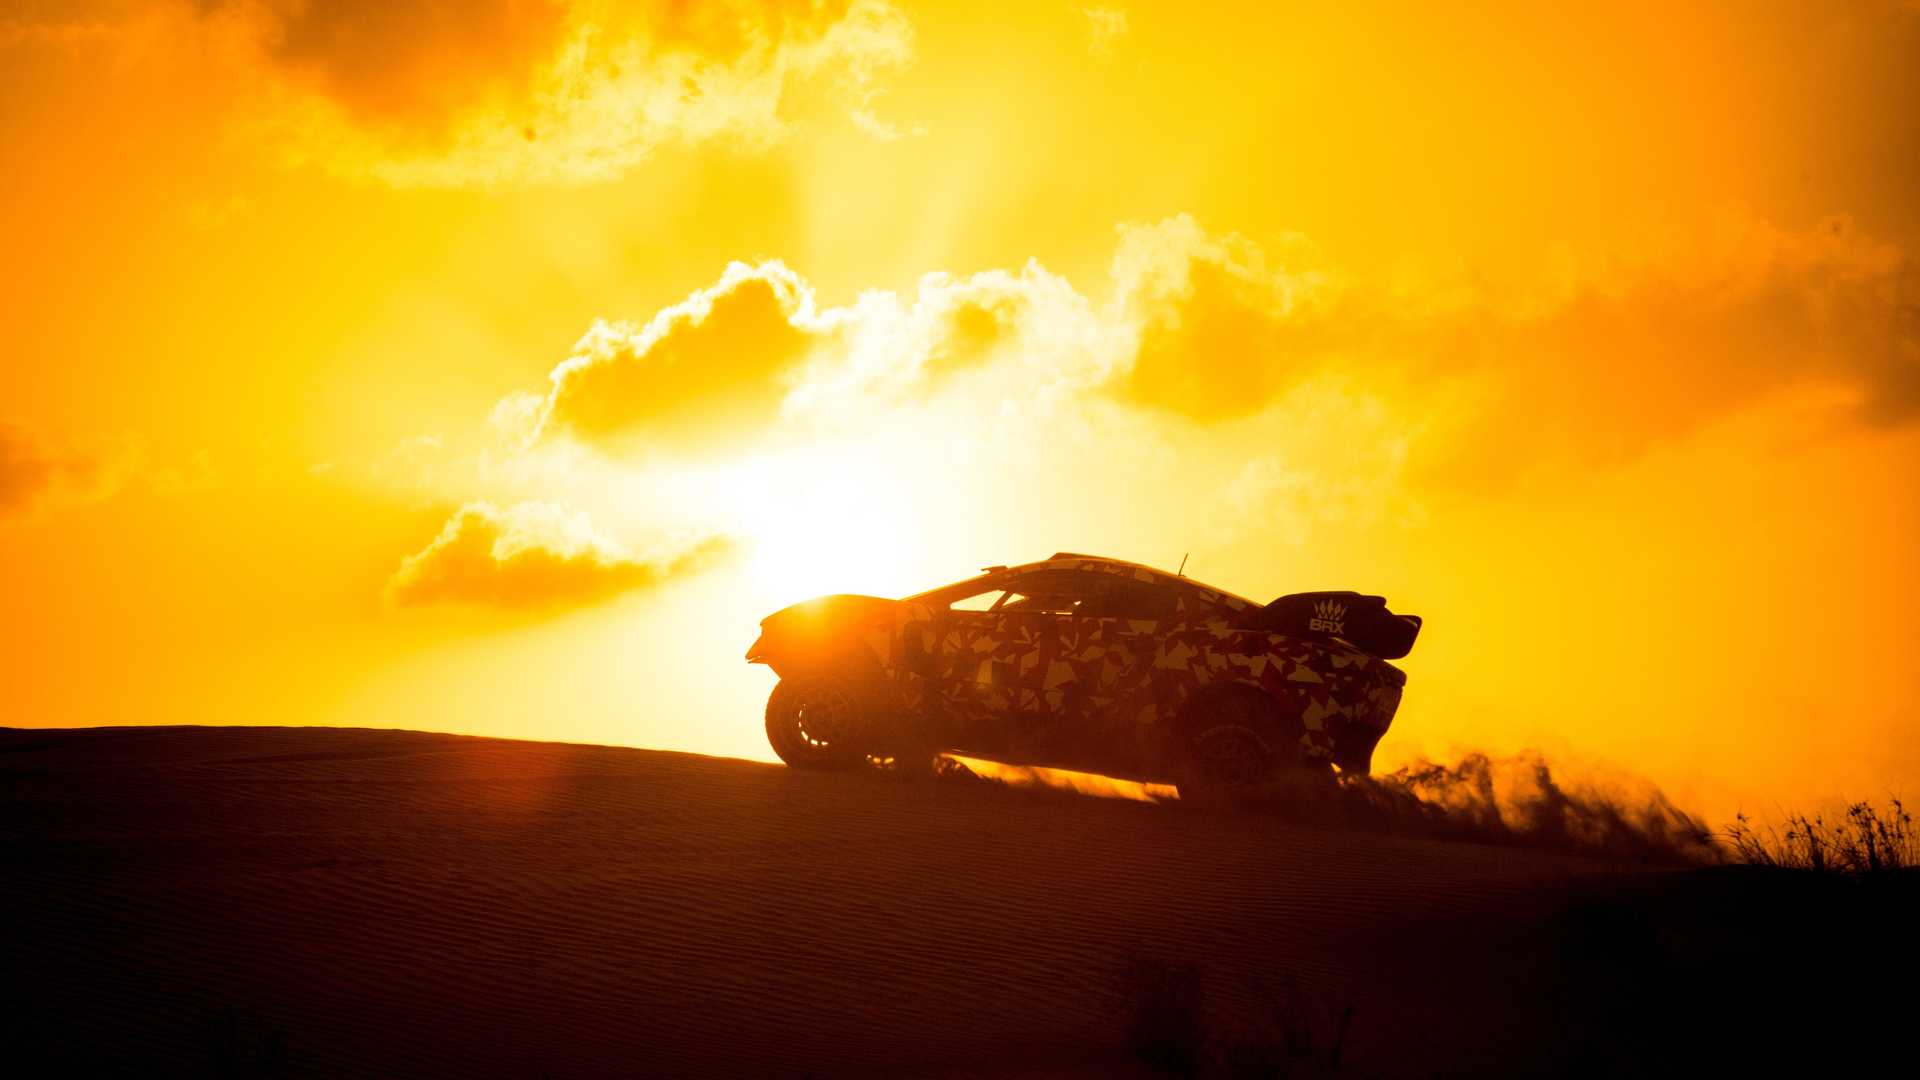 شاسی بلند رالی پرودرایو بی آر ایکس هانتر / Prodrive BRX Hunter SUV با منظره غروب خورشید